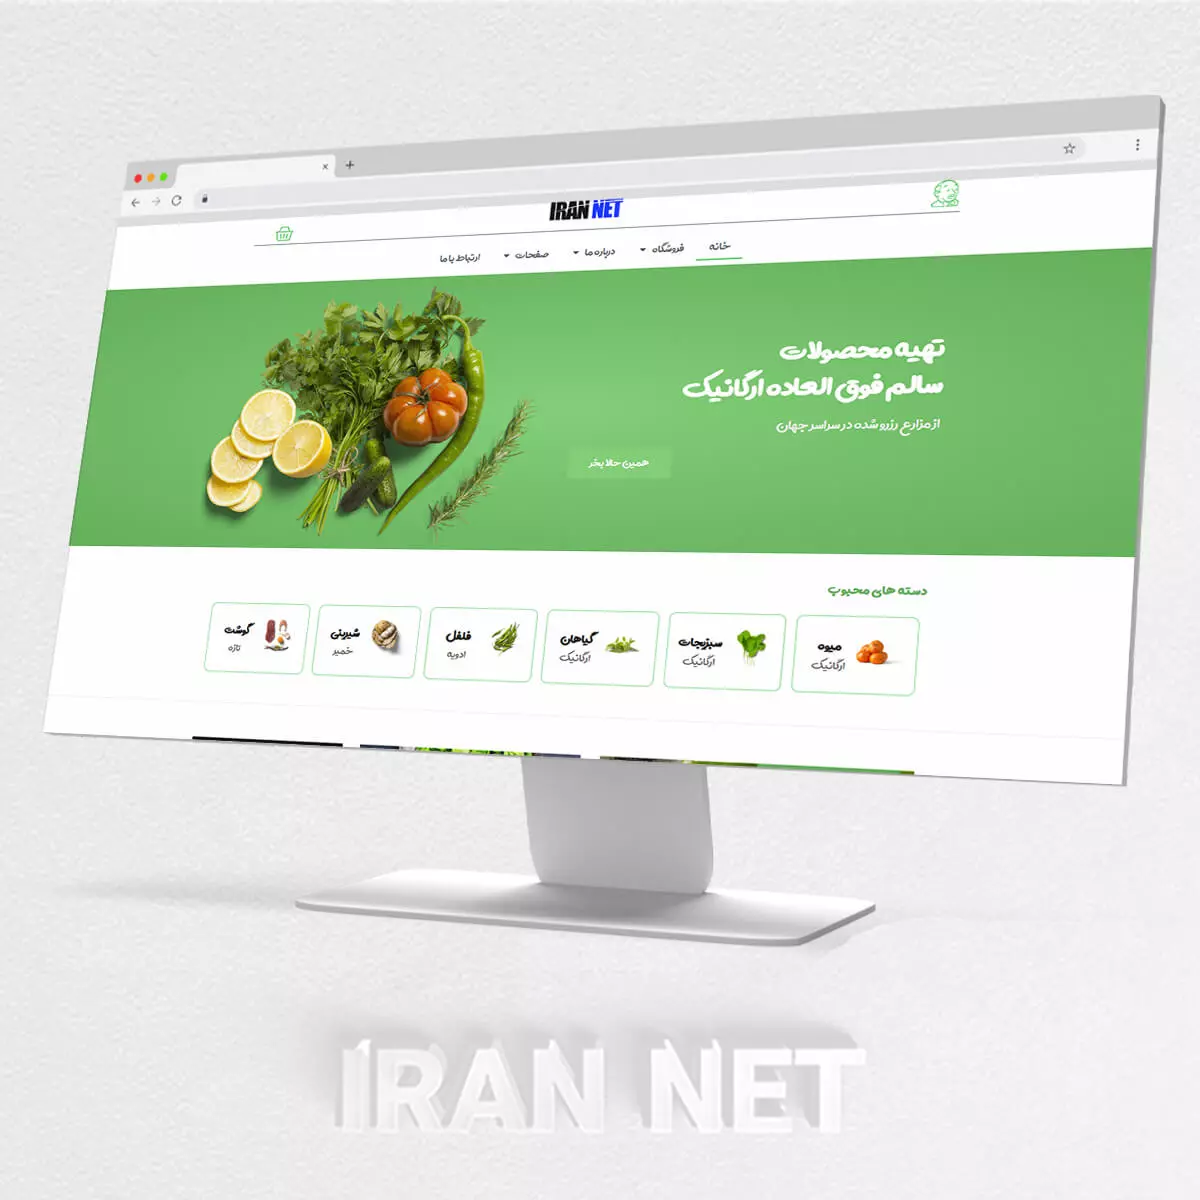 سایت رایگان-قالب آماده رایگان-قالب رایگان وردپرس-طراحی سای رایگان-ایران نت